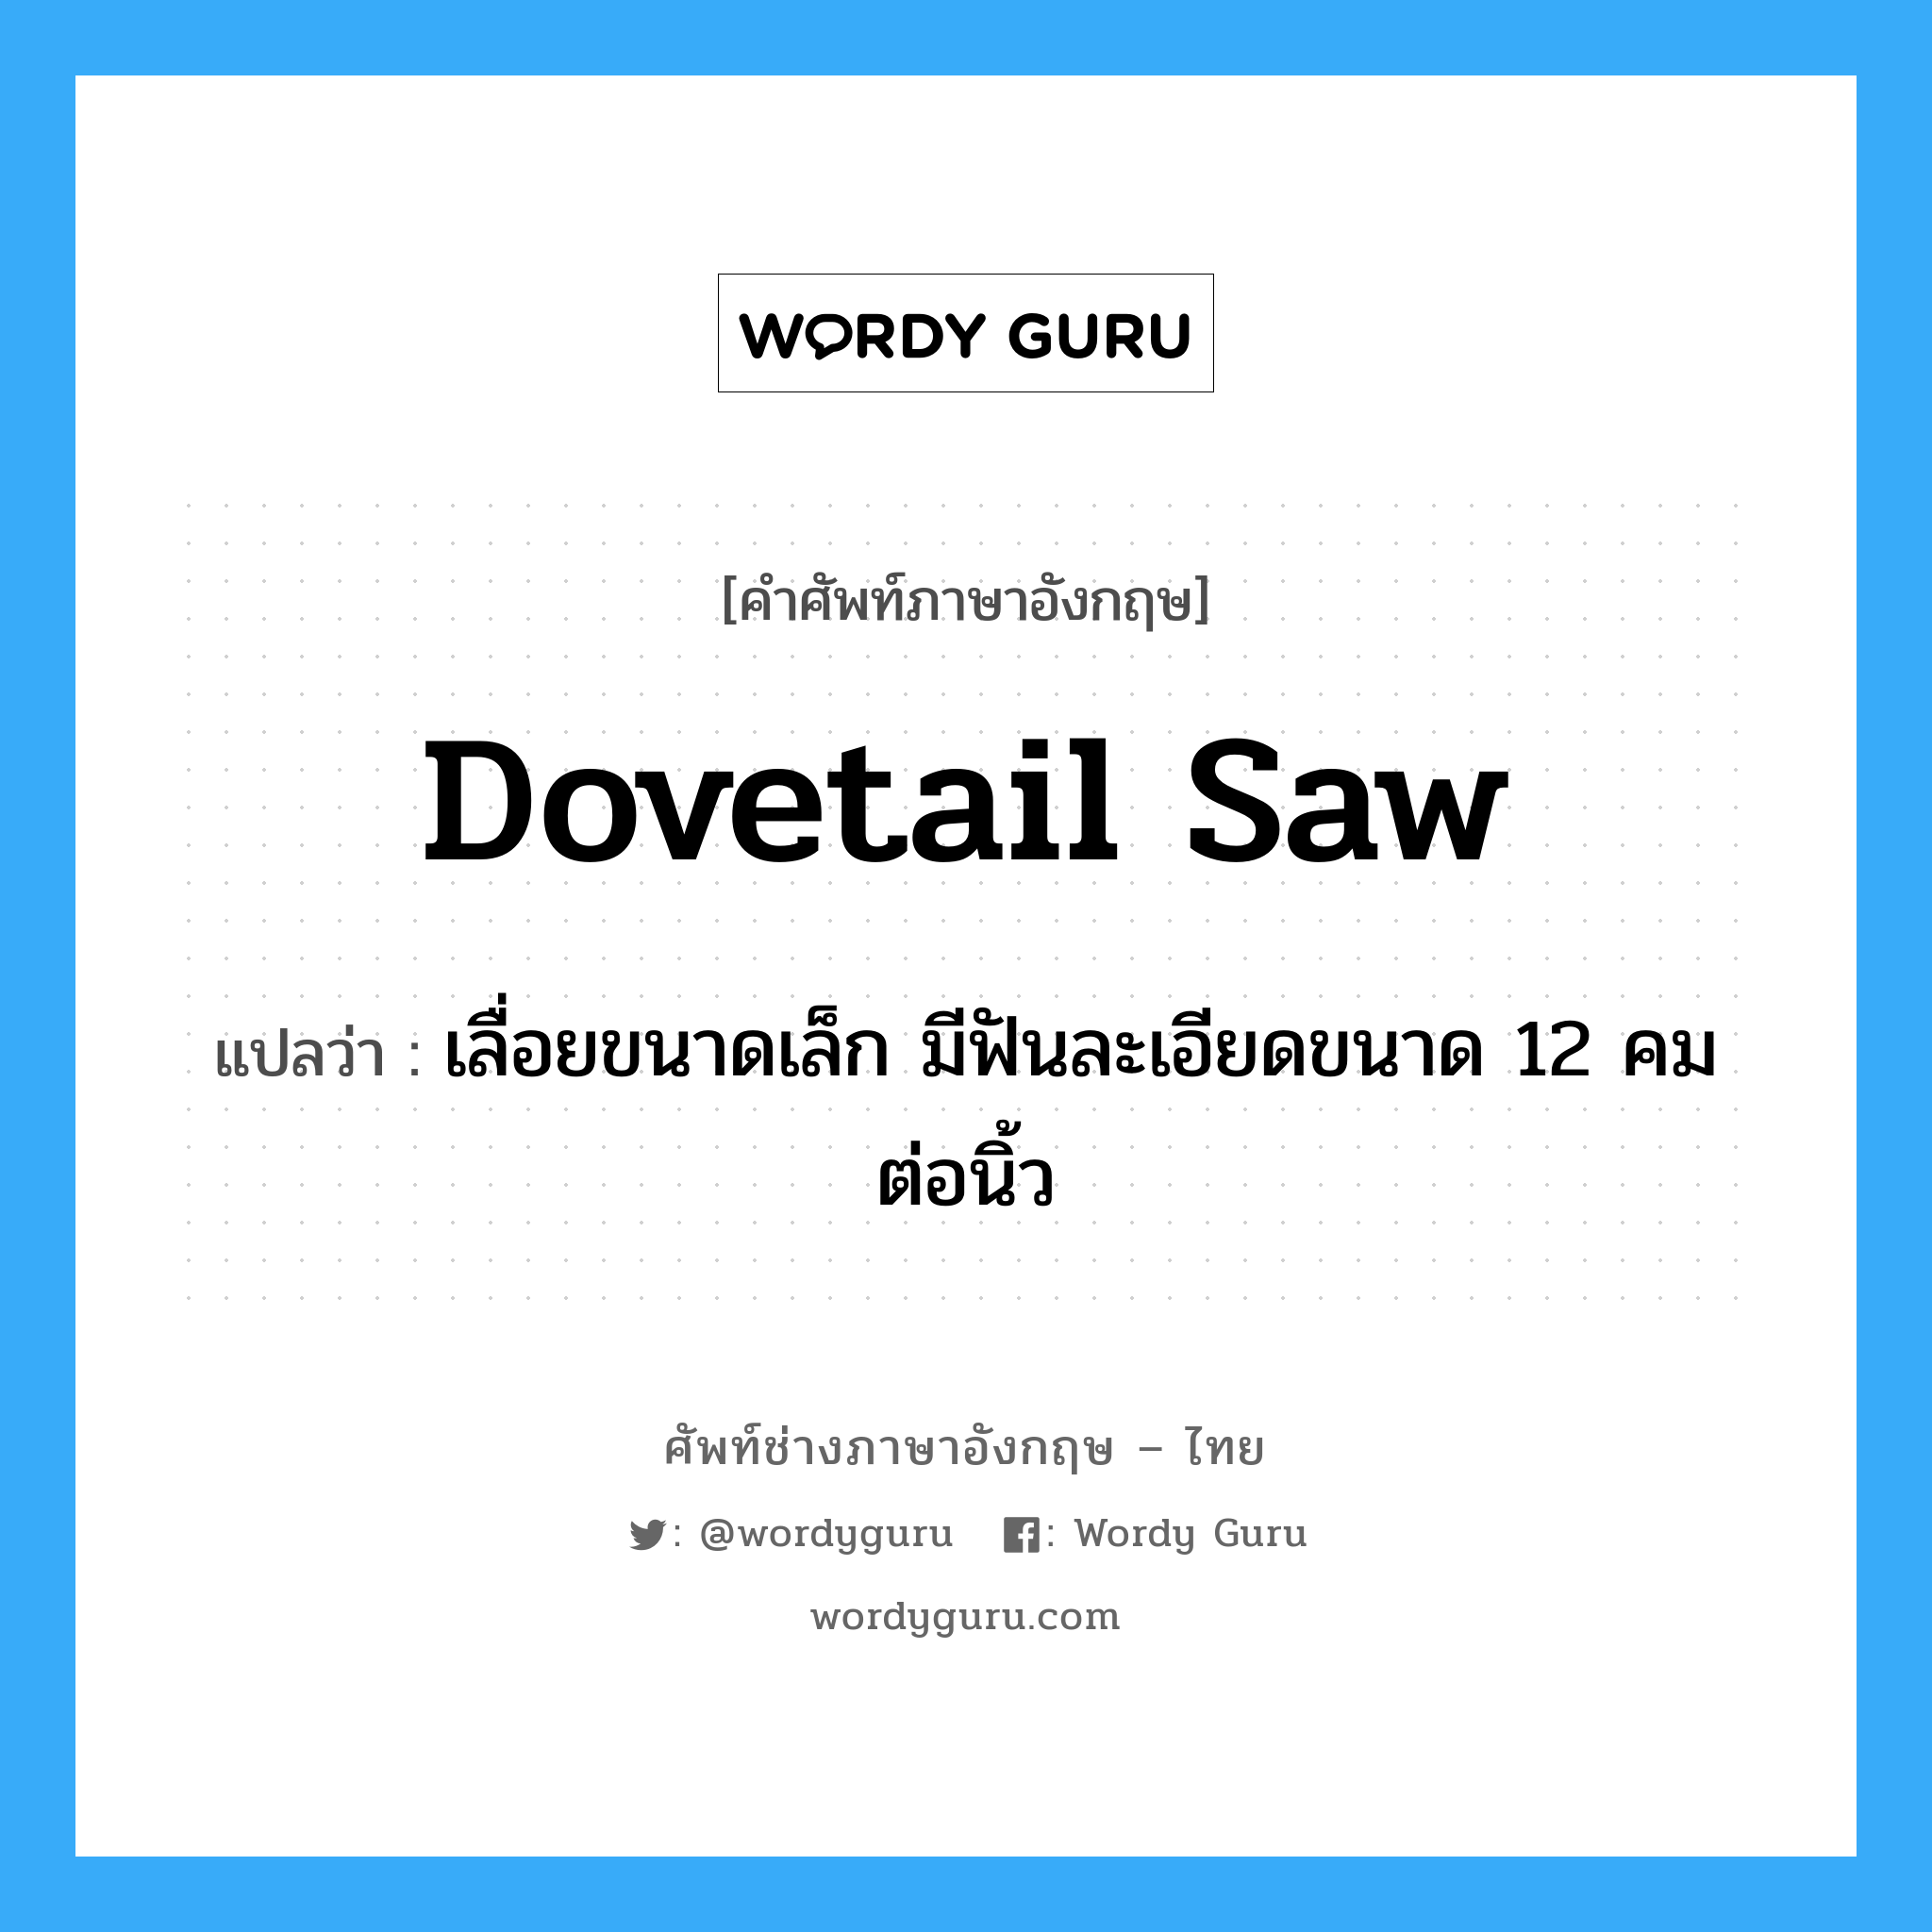 dovetail saw แปลว่า?, คำศัพท์ช่างภาษาอังกฤษ - ไทย dovetail saw คำศัพท์ภาษาอังกฤษ dovetail saw แปลว่า เลื่อยขนาดเล็ก มีฟันละเอียดขนาด 12 คมต่อนิ้ว